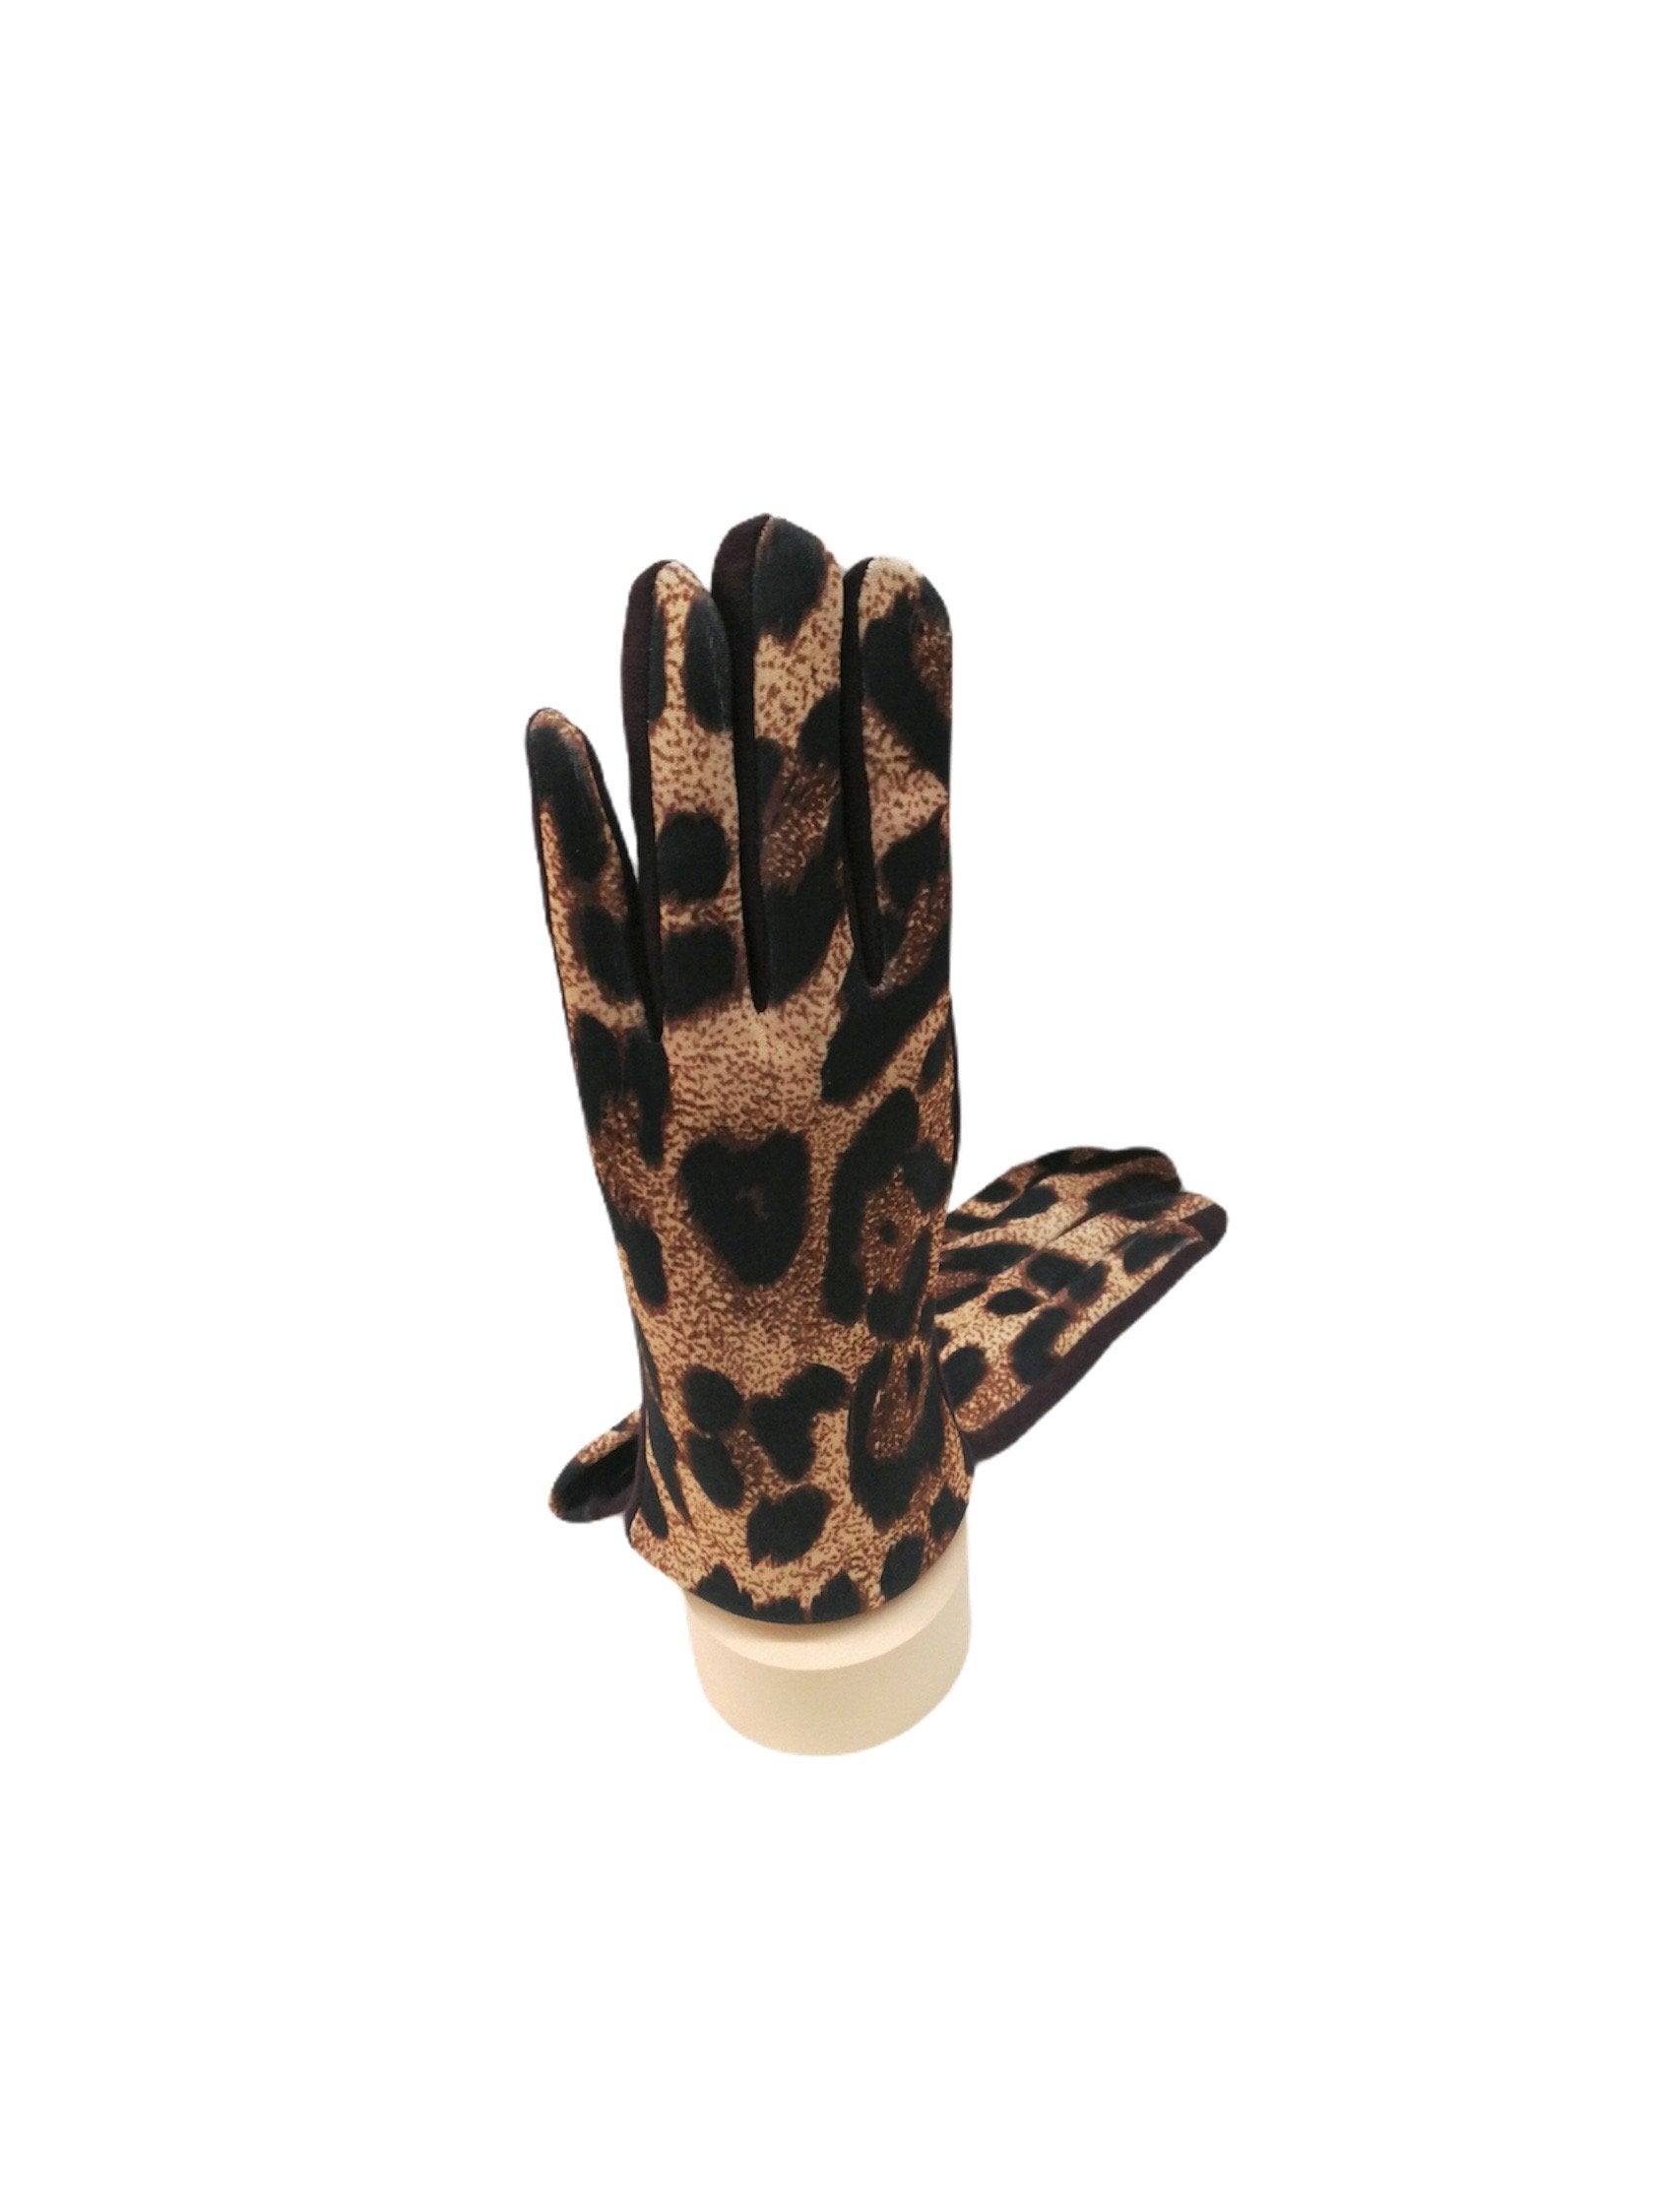 Gants tactiles motif léopard doublure (x12) 3,50€/paire | Grossiste-pro